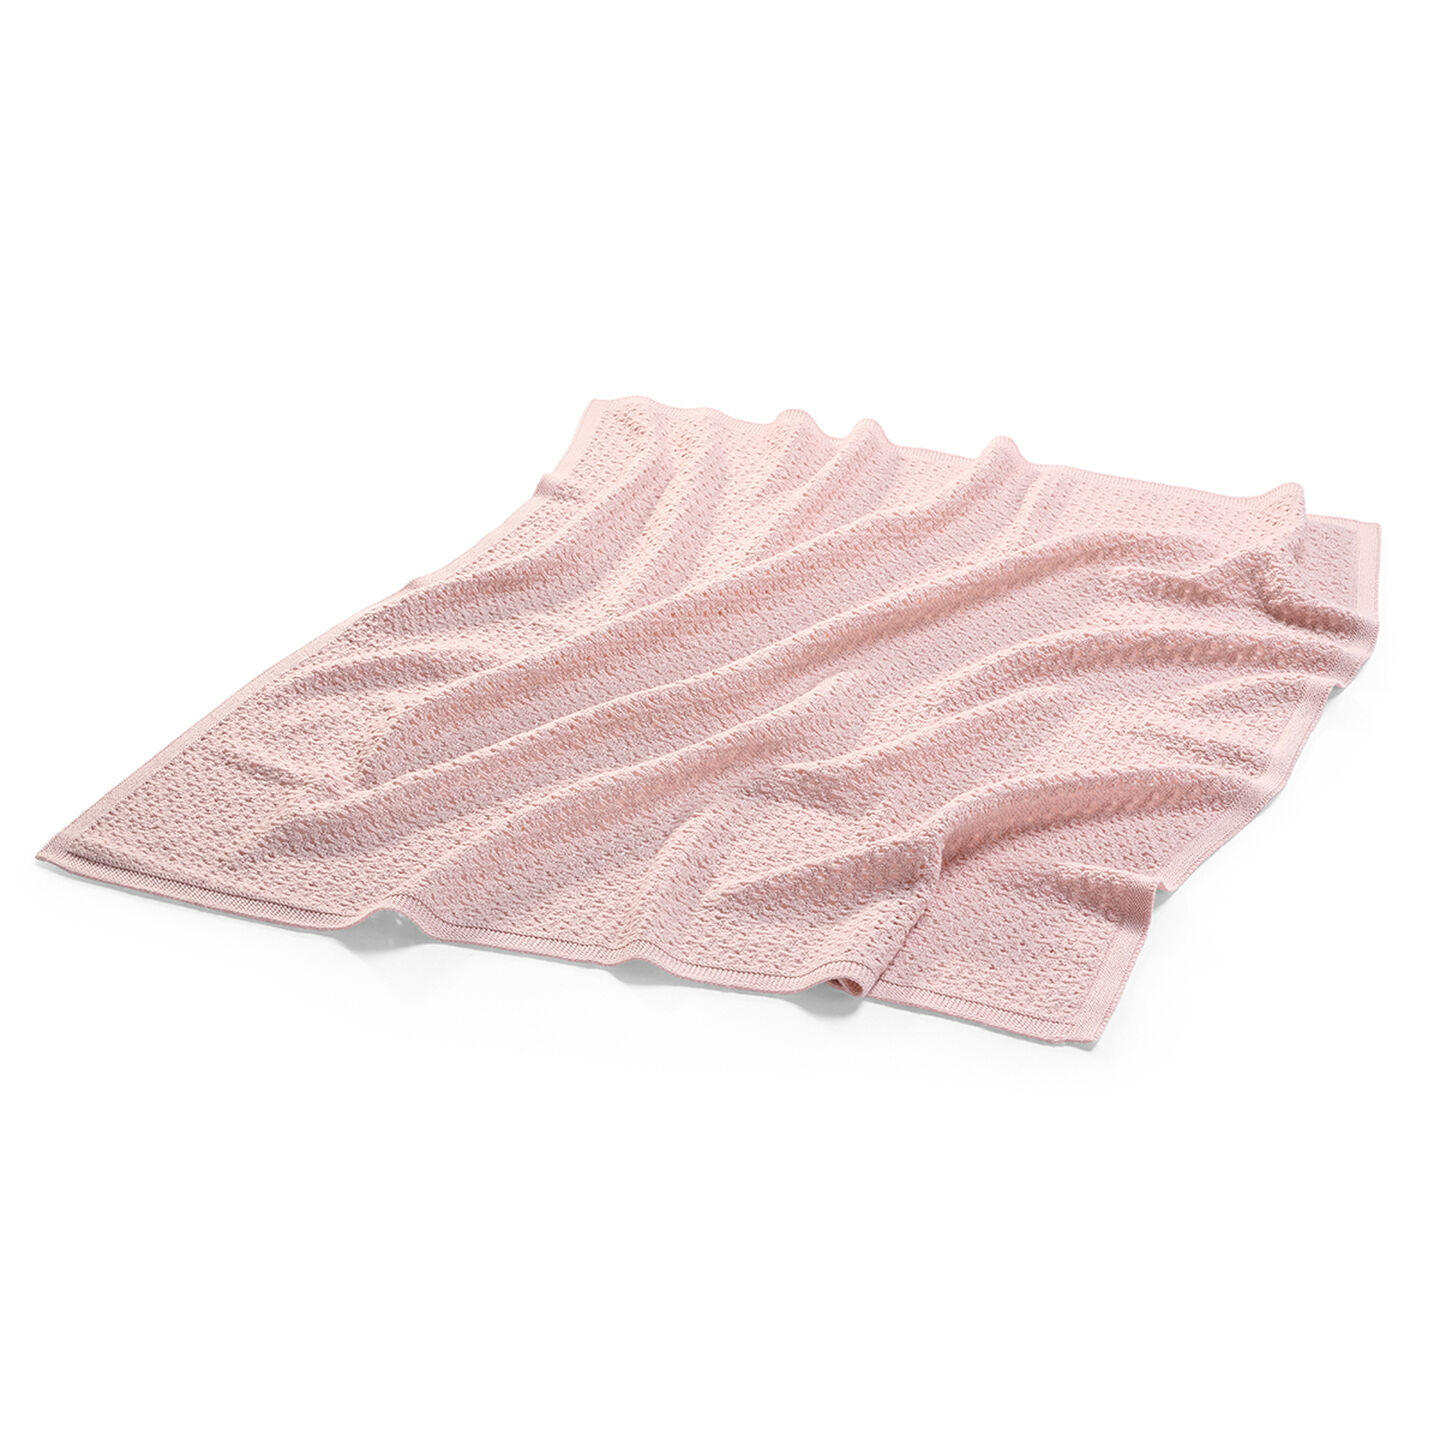 Stokke® Blanket Merino Wool Pink, Pink, mainview view 2